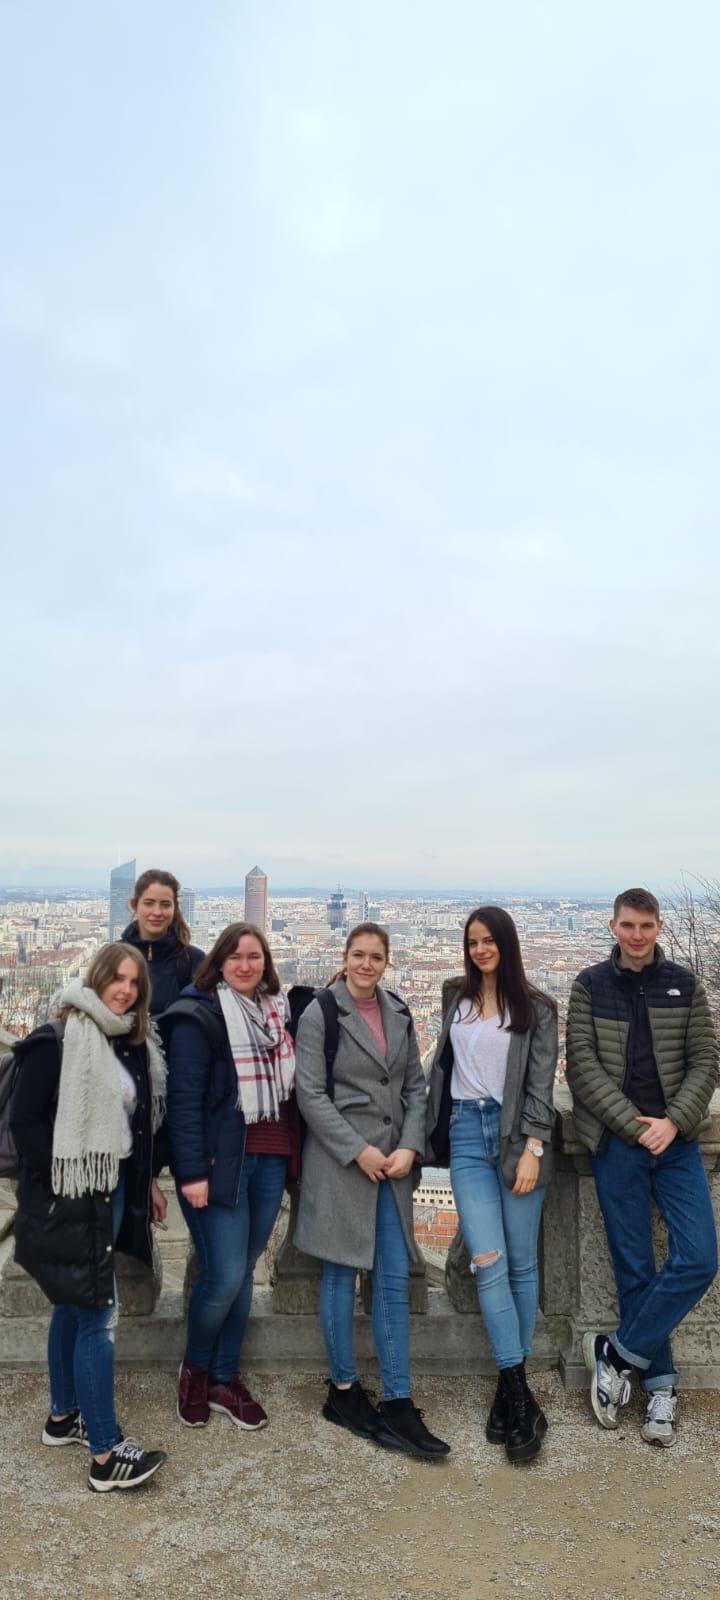 Studenten stehen auf einer Aussichtsplattform mit der Stadt Lyon im Hintergrund